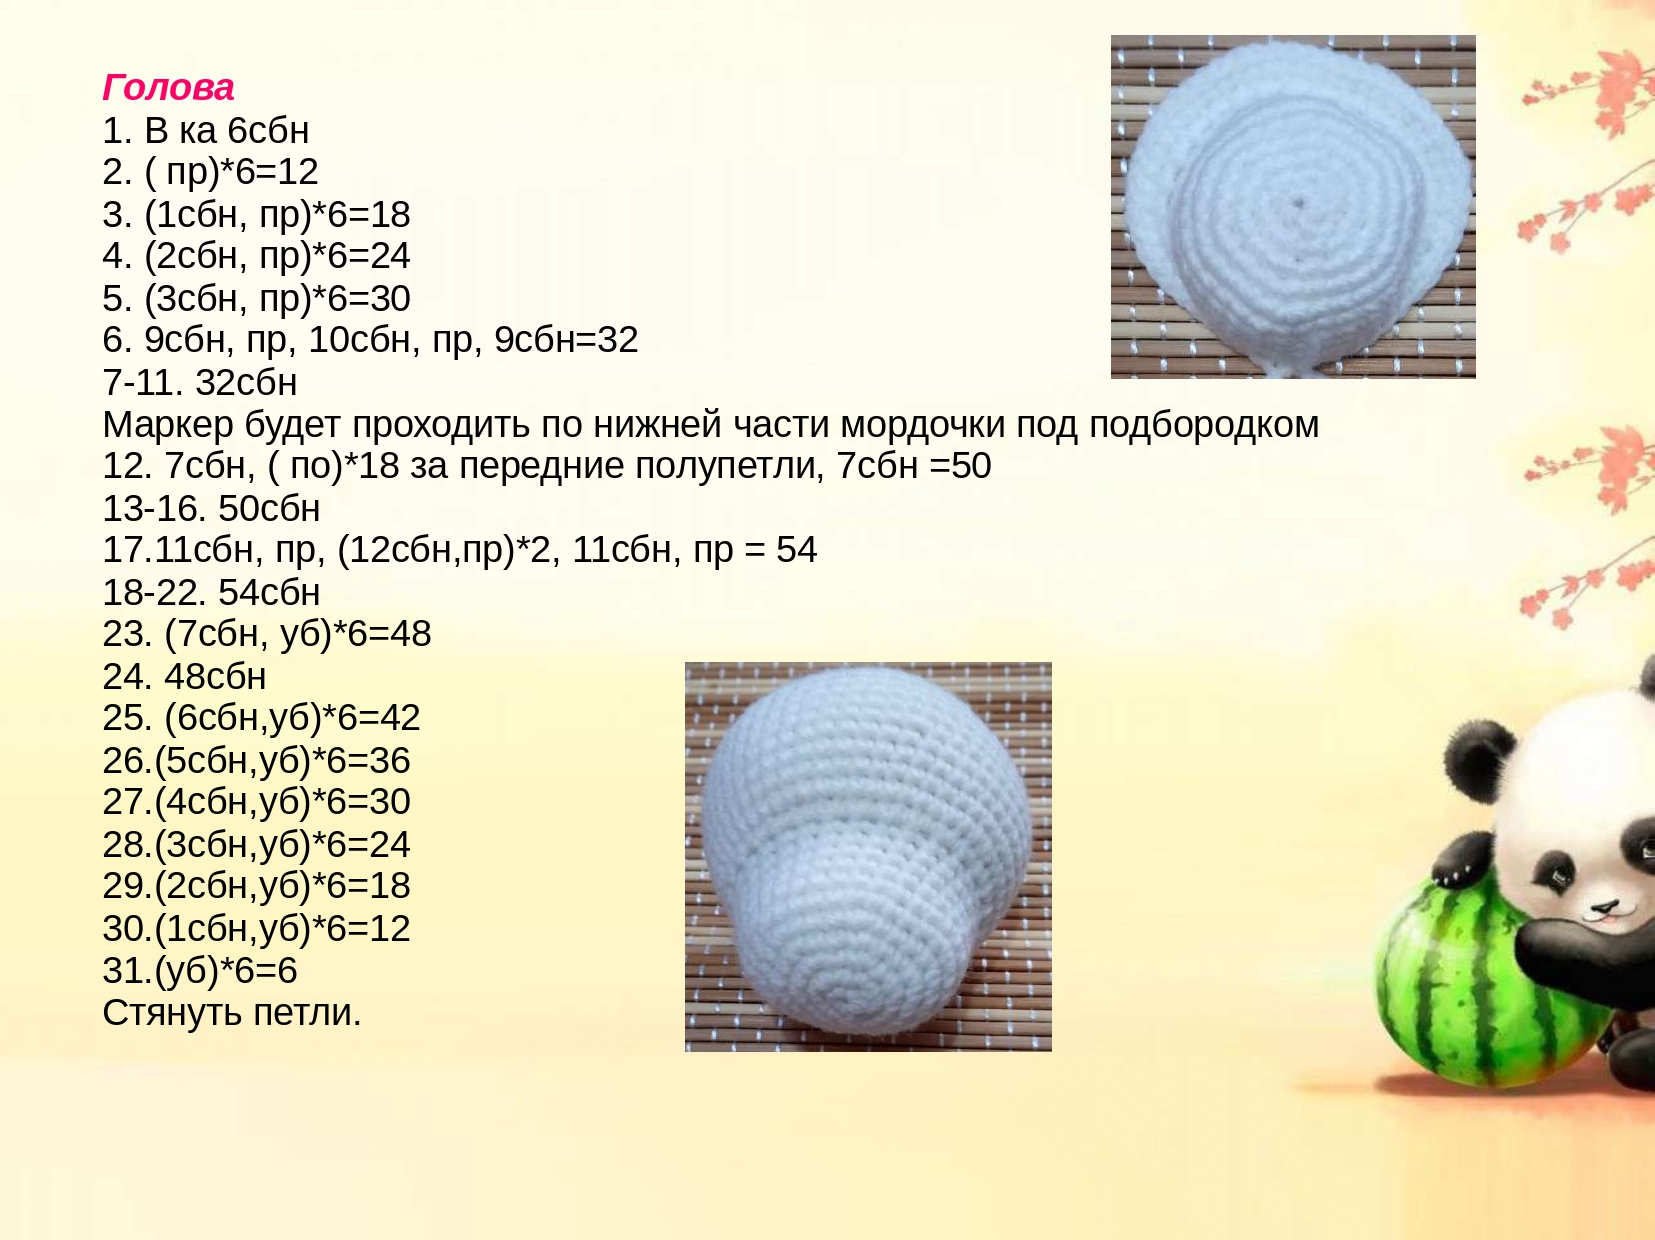 Вязание амигуруми - правила вязки, фото идеи, описание схем